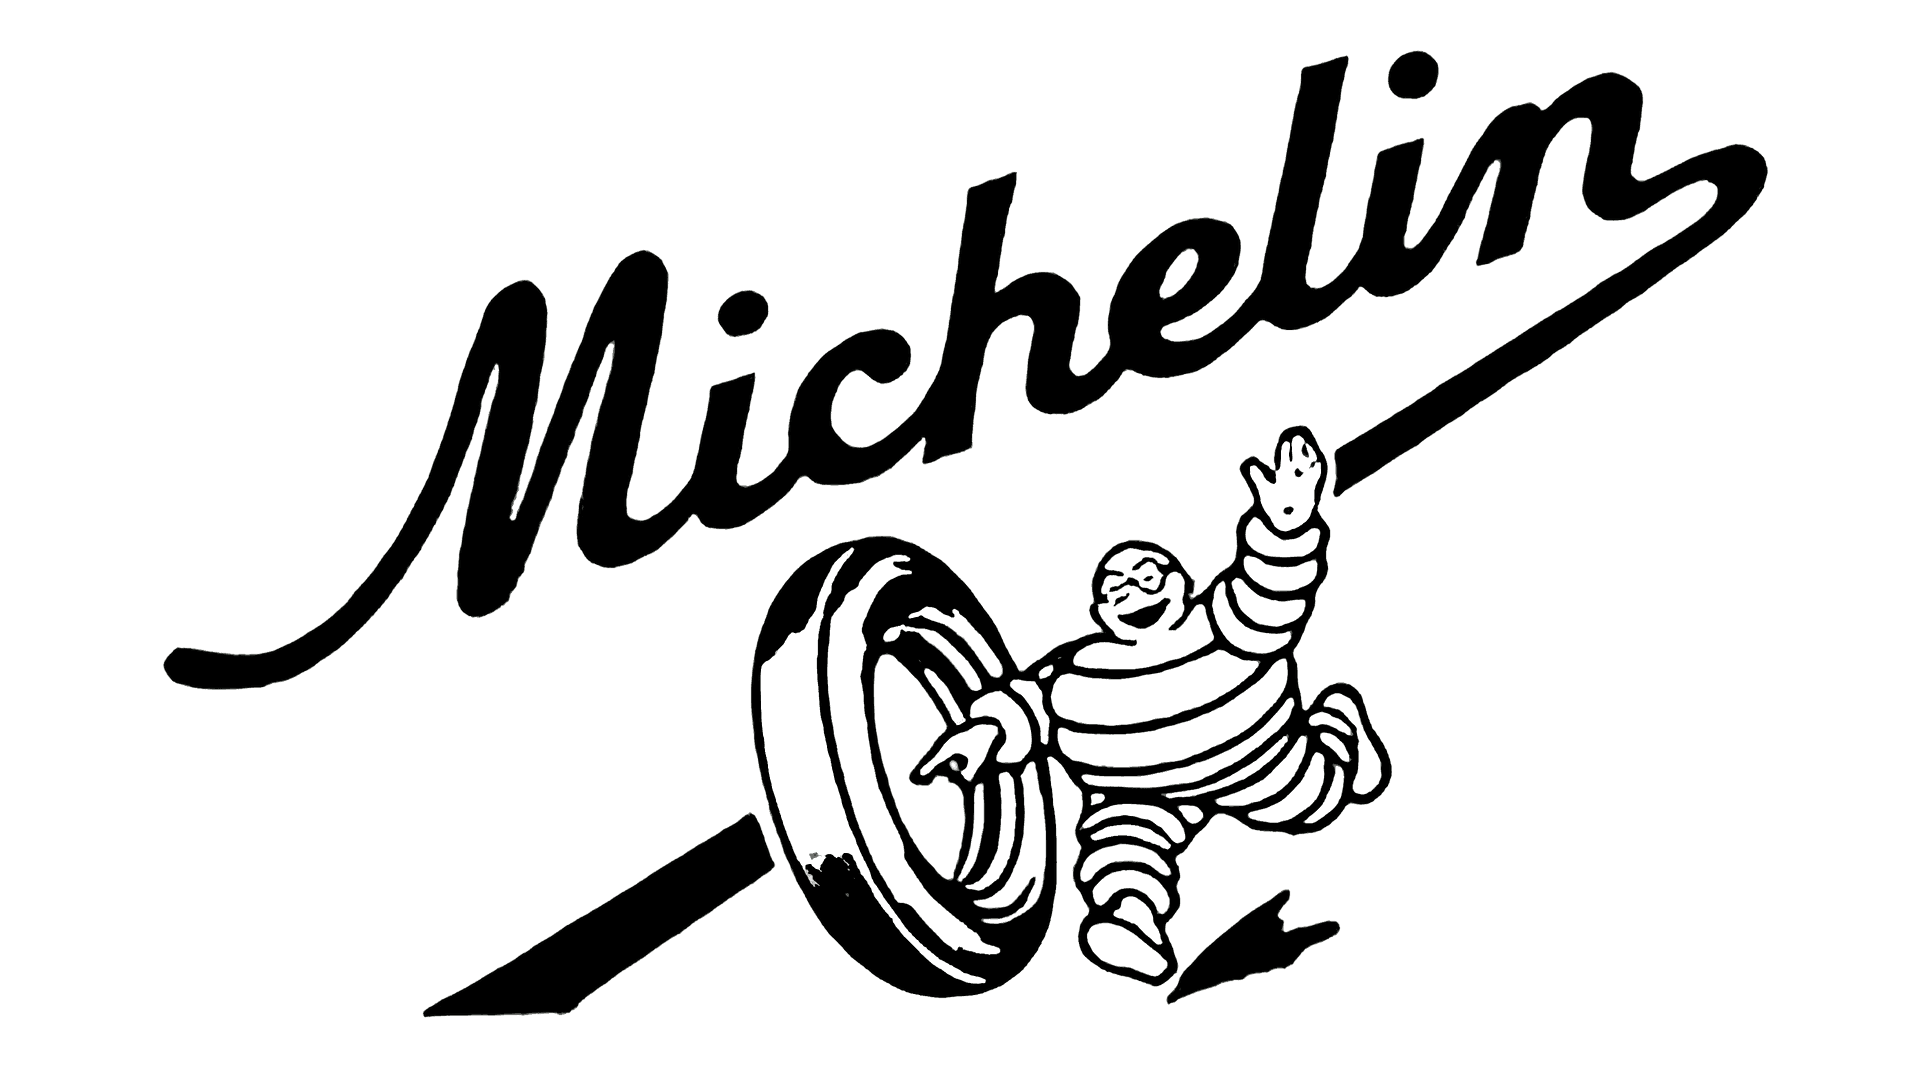 Michelin Man Logo PNG